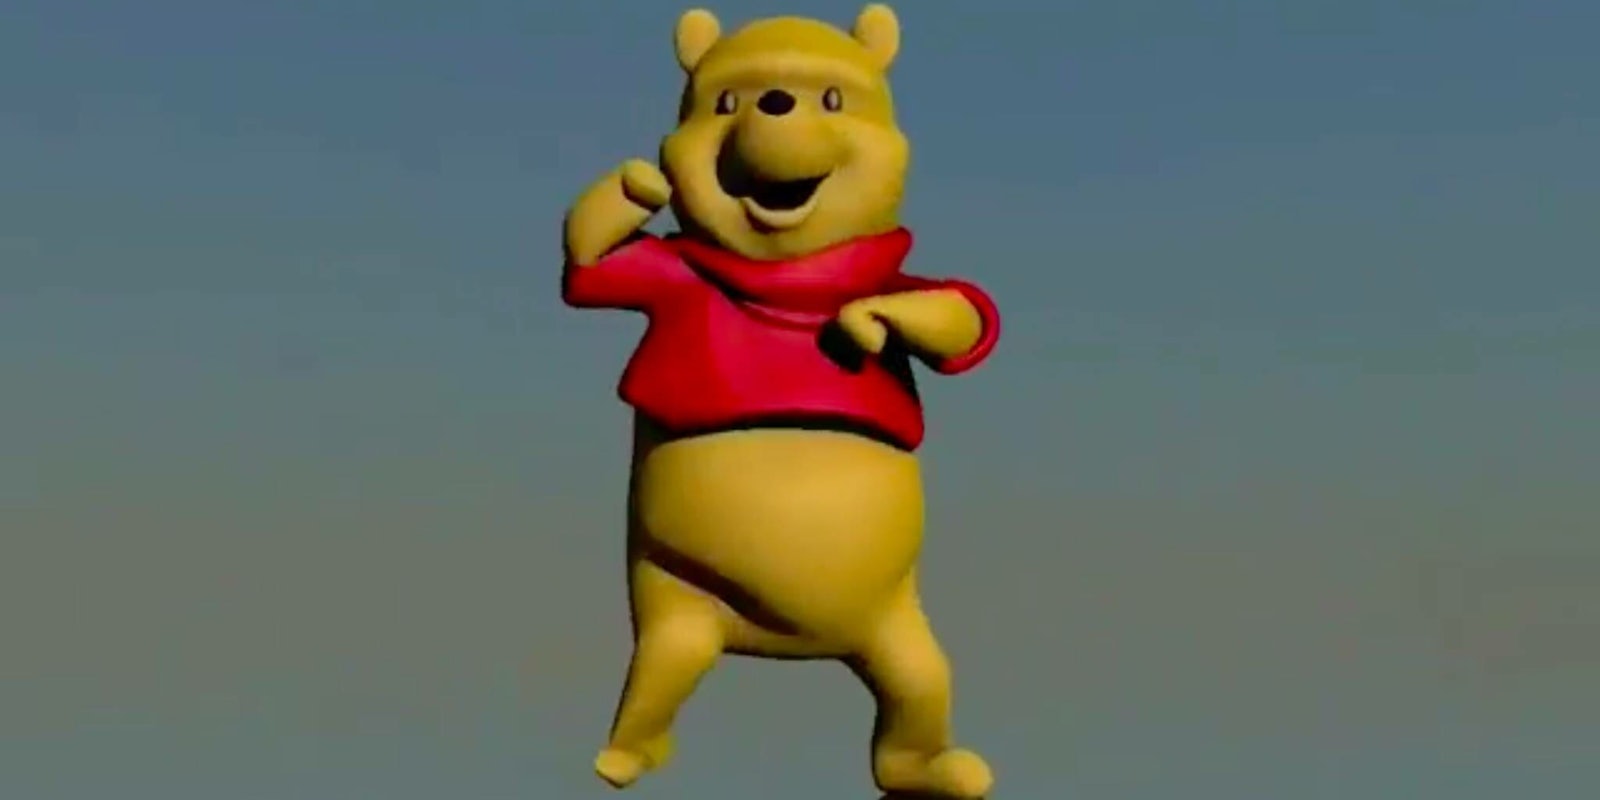 Dancing Winnie the Pooh meme